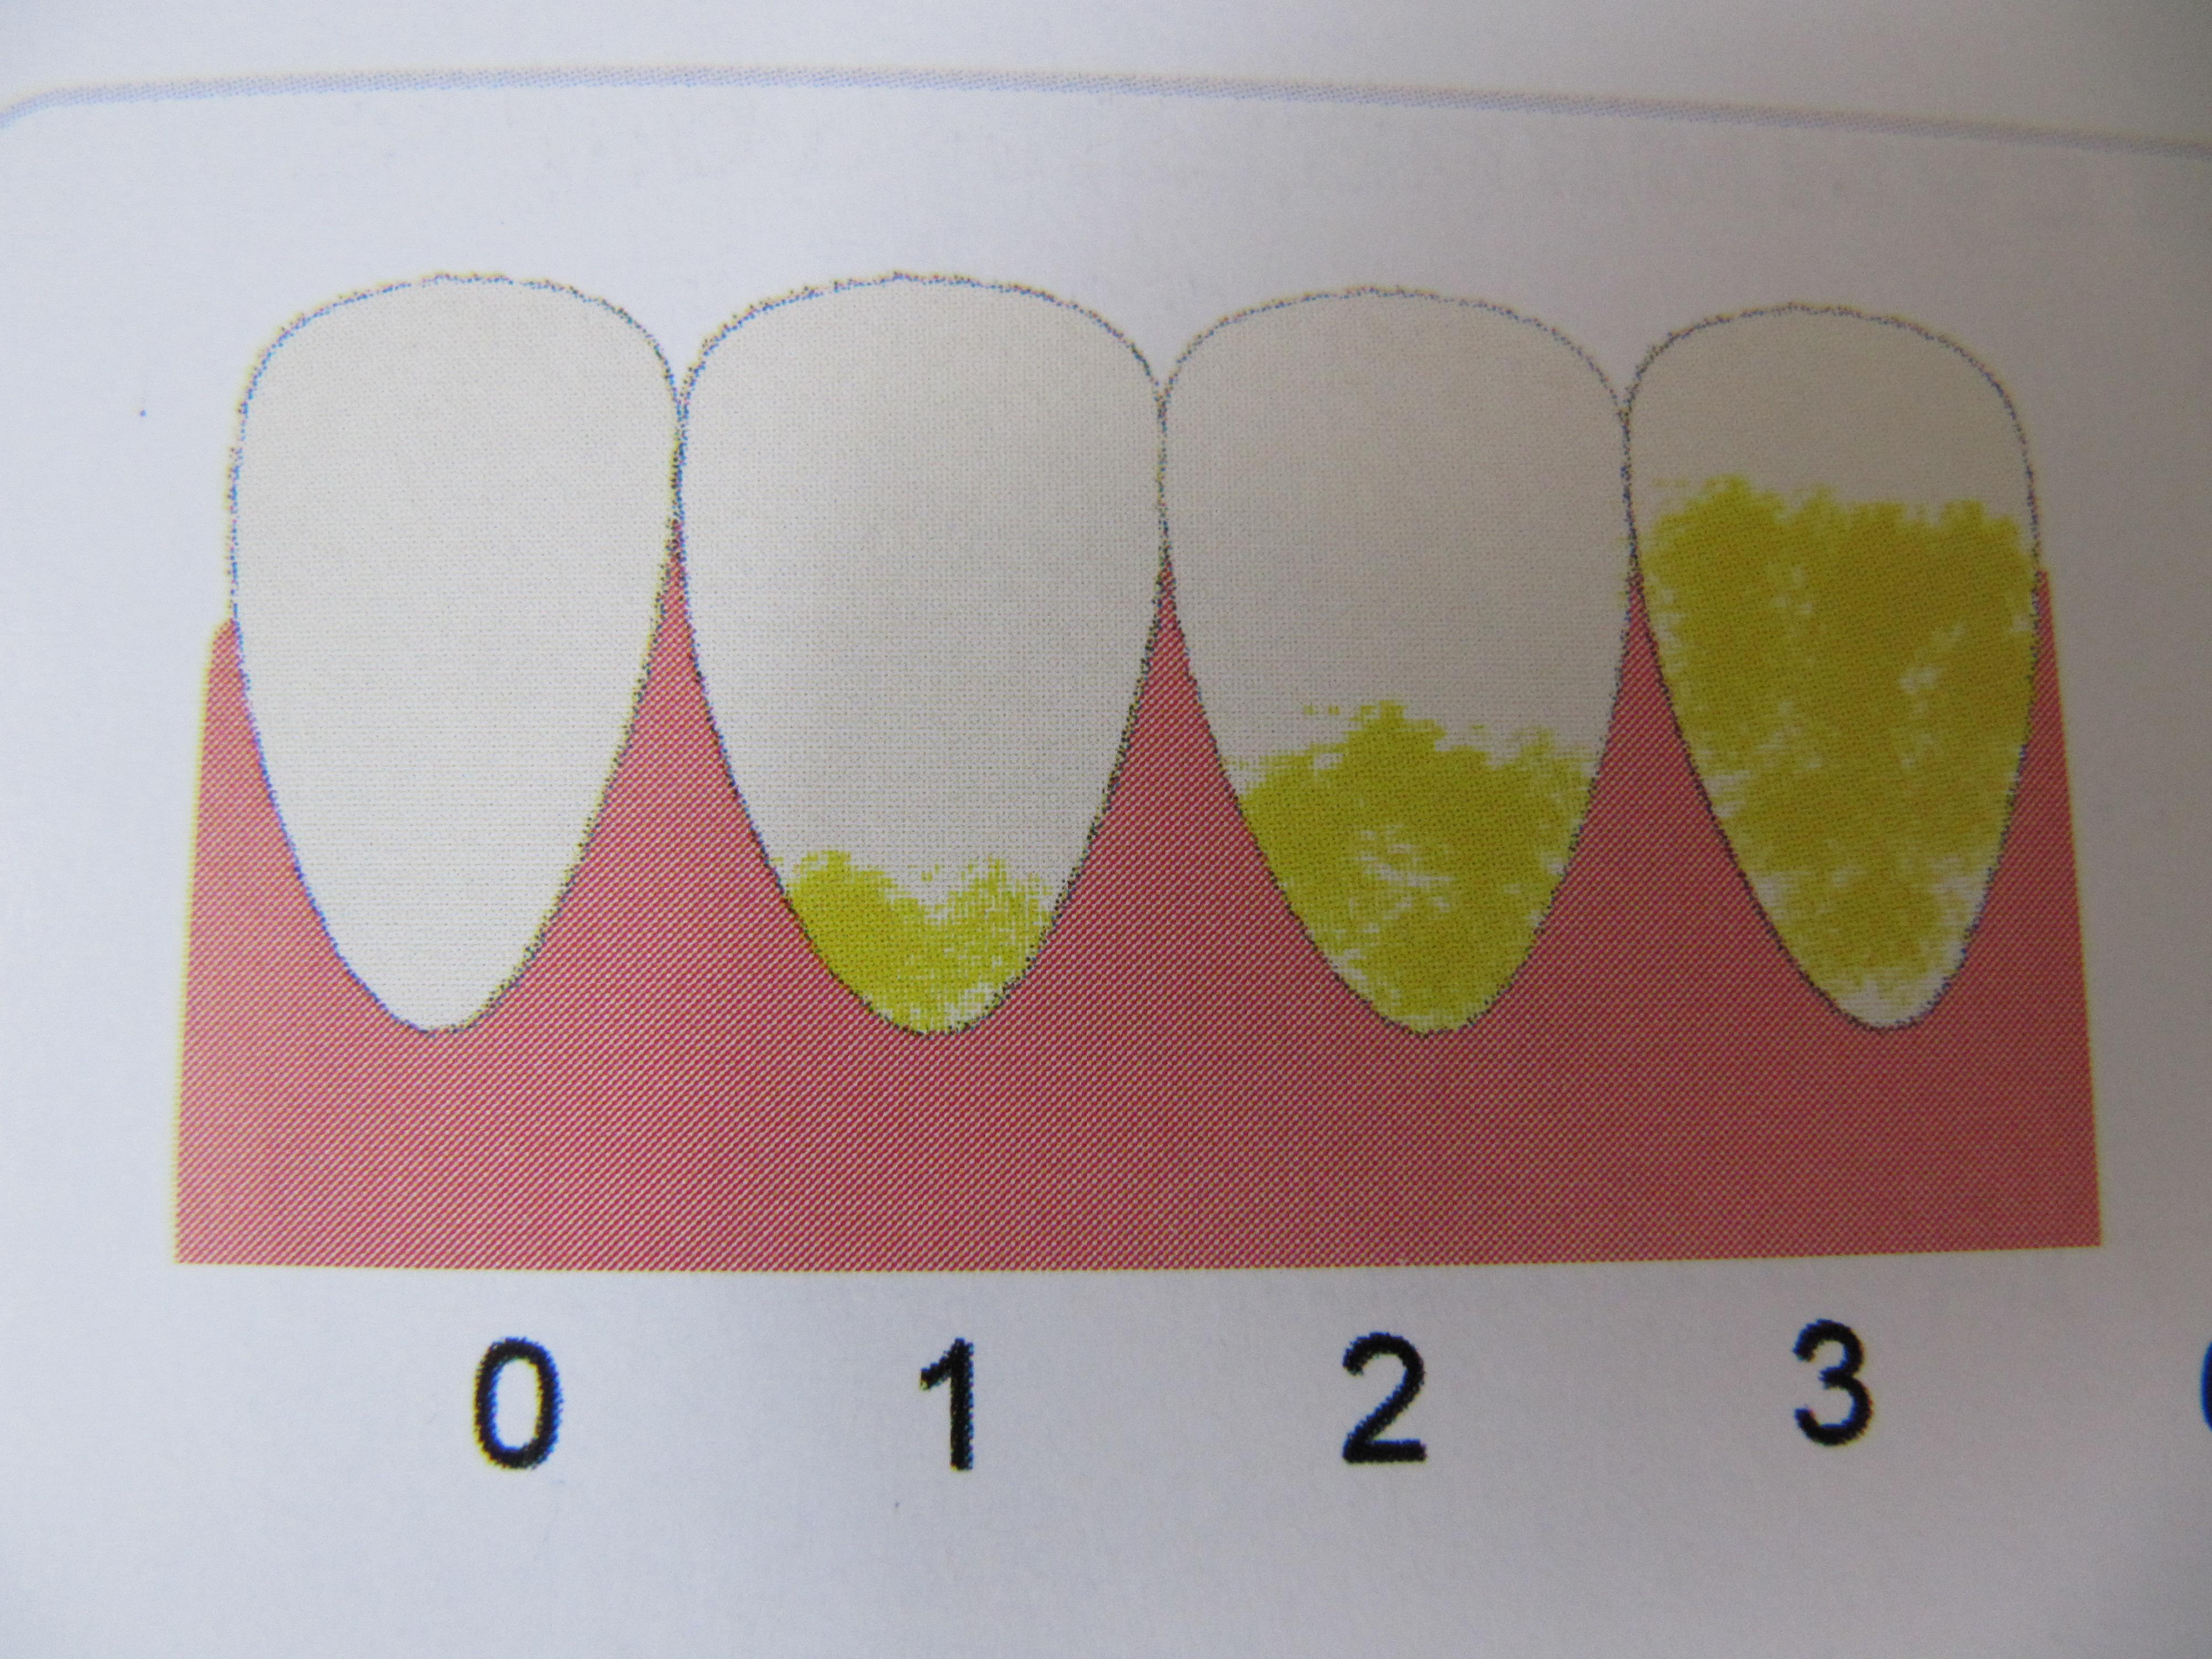 Индекс десна. Зубной налет у молочных зубов. Пожелтение эмали молочных зубов. Налет на эмали молочных зубов.